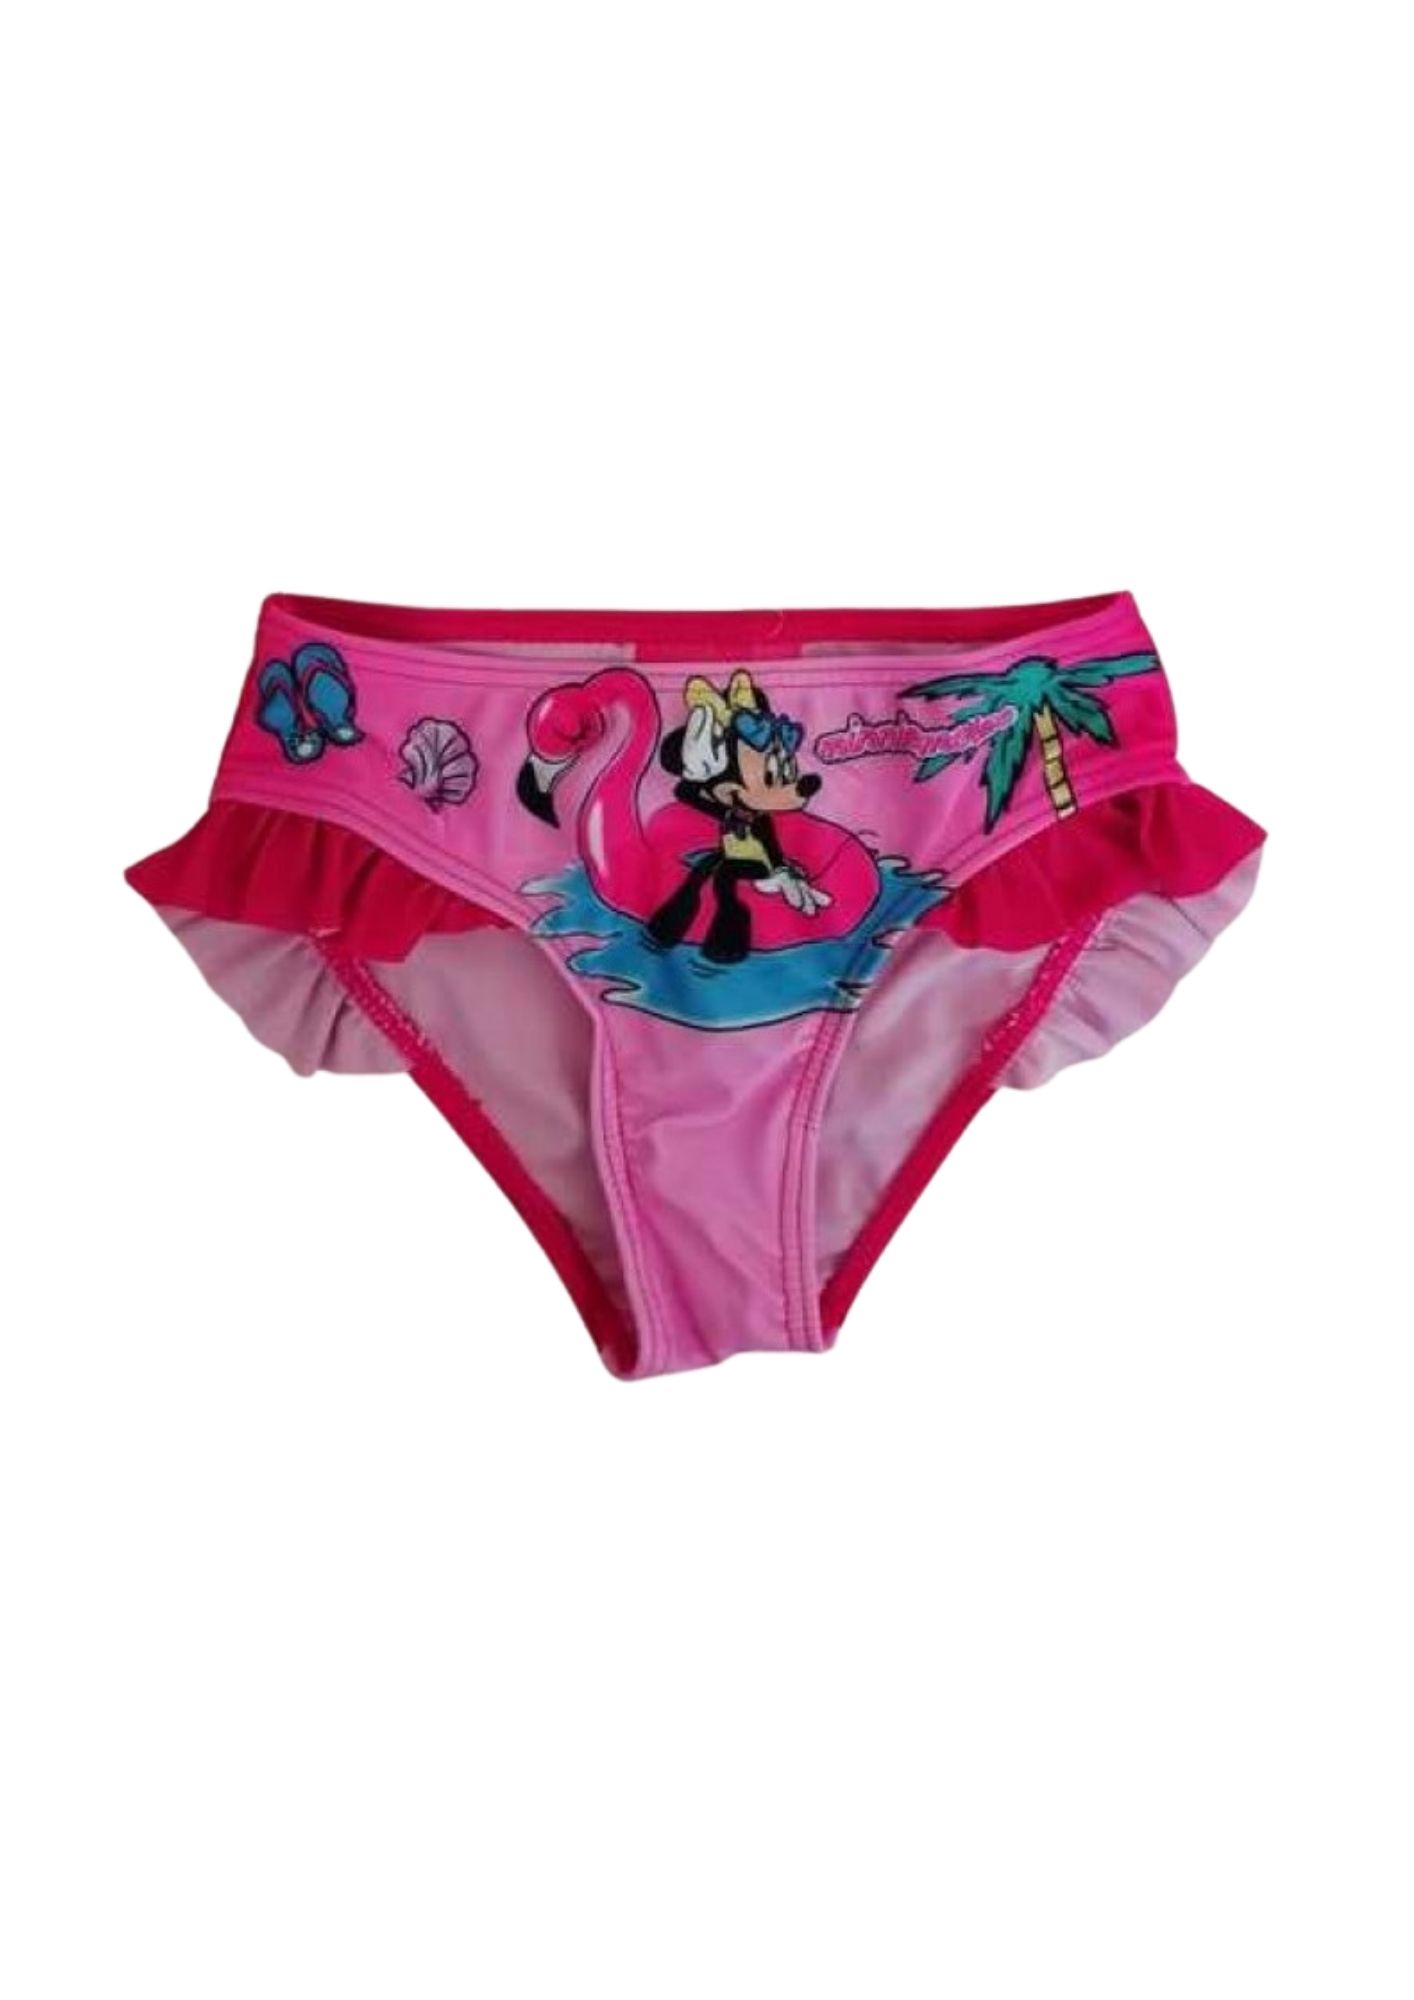 E-shop Setino Dievčenské plavky spodok - Minnie Mouse tmavoružové